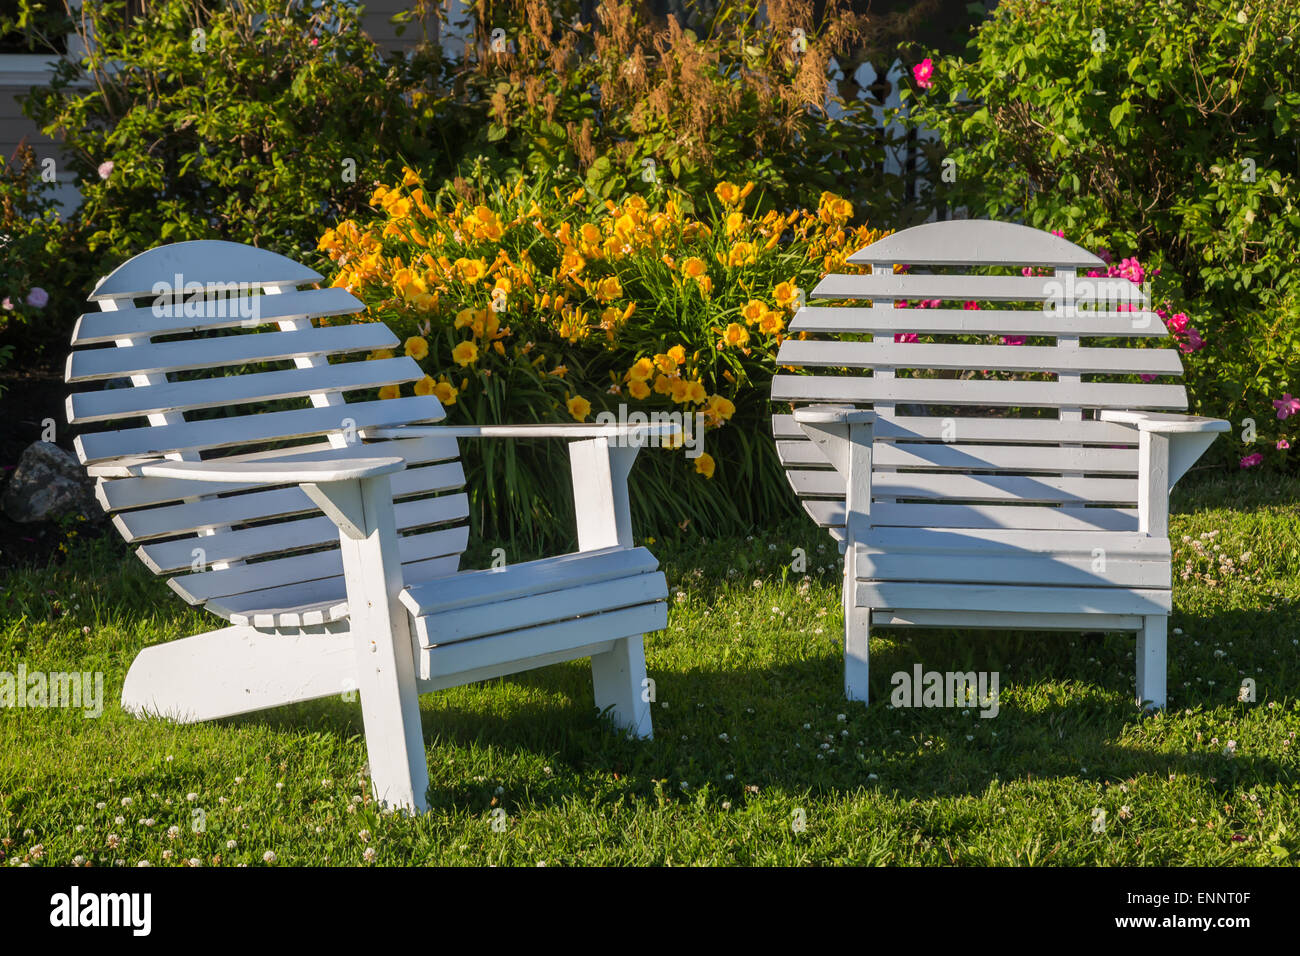 Dos rond chaises Adirondack affectueusement connu comme une lune chaise  devant une maison et fleurs Photo Stock - Alamy